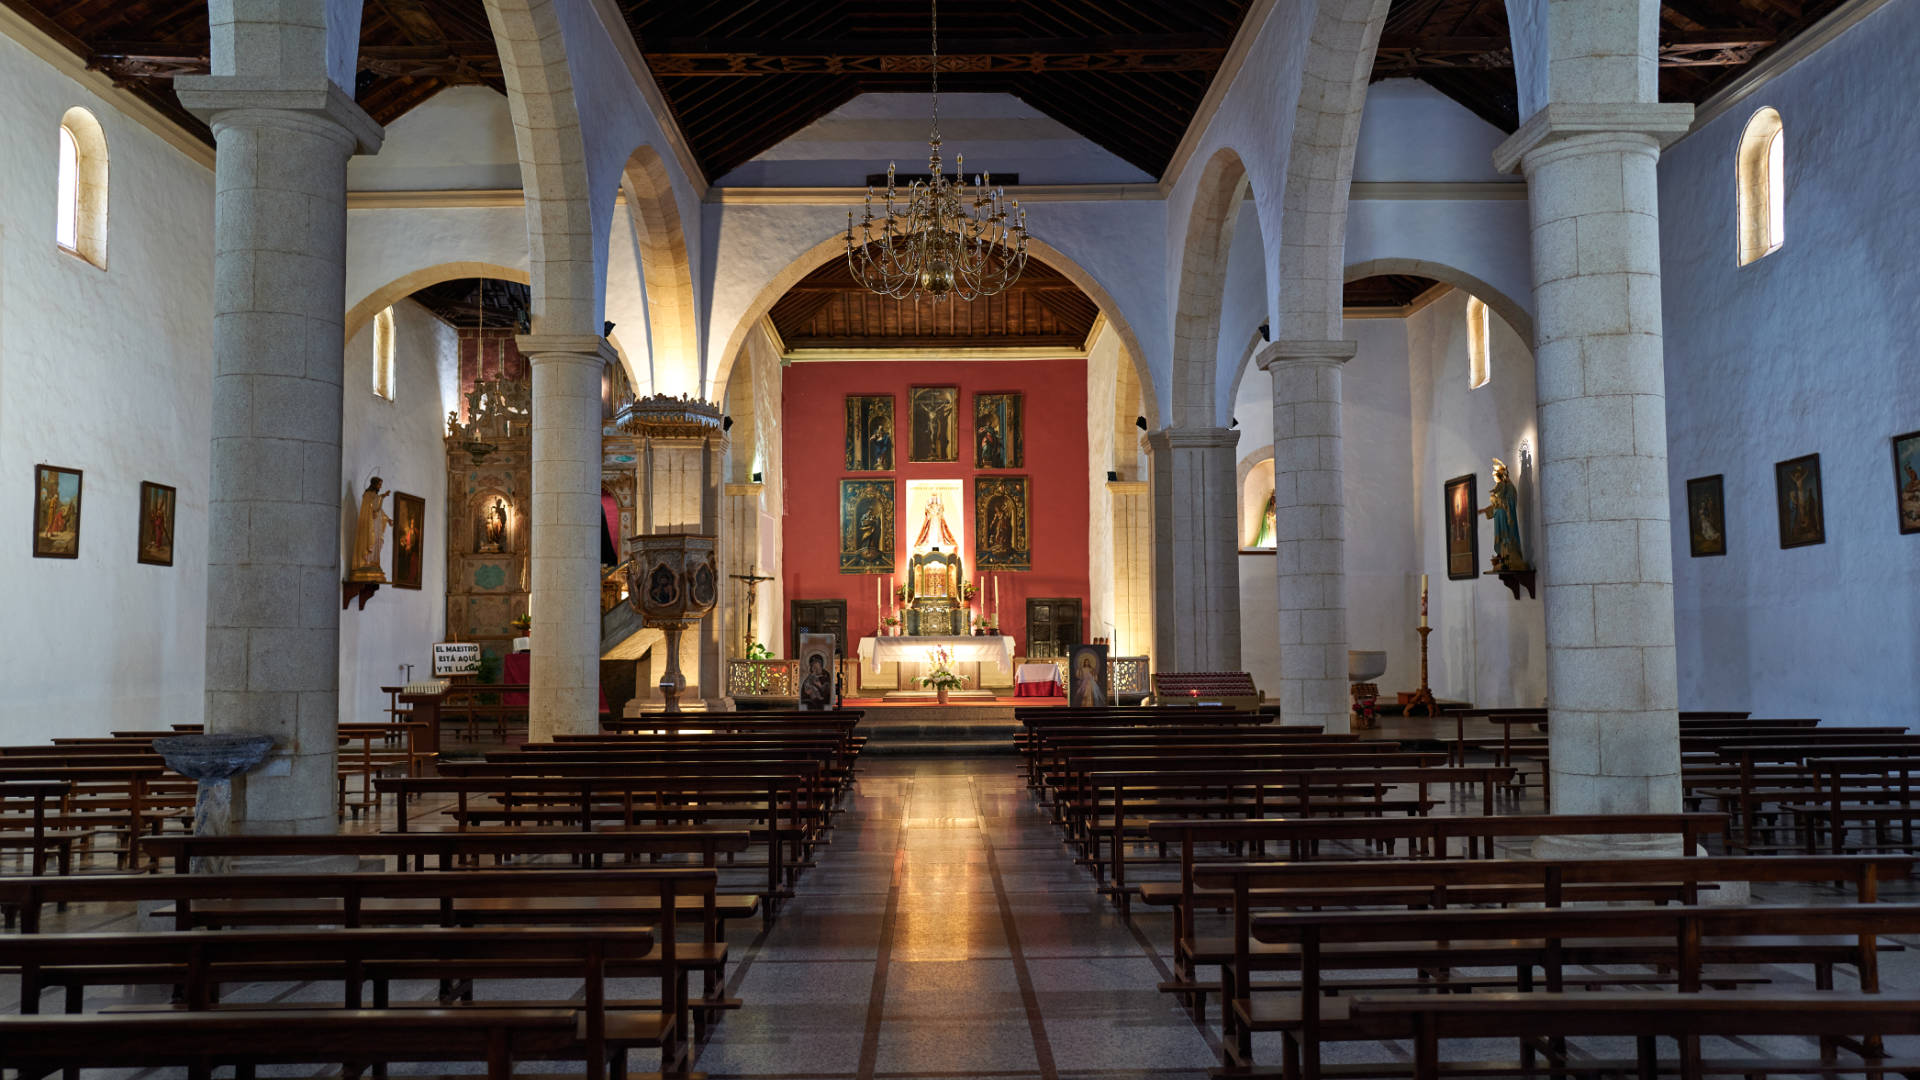 Igelsia Nuestra Señora de la Candelaria La Oliva Fuerteventura.